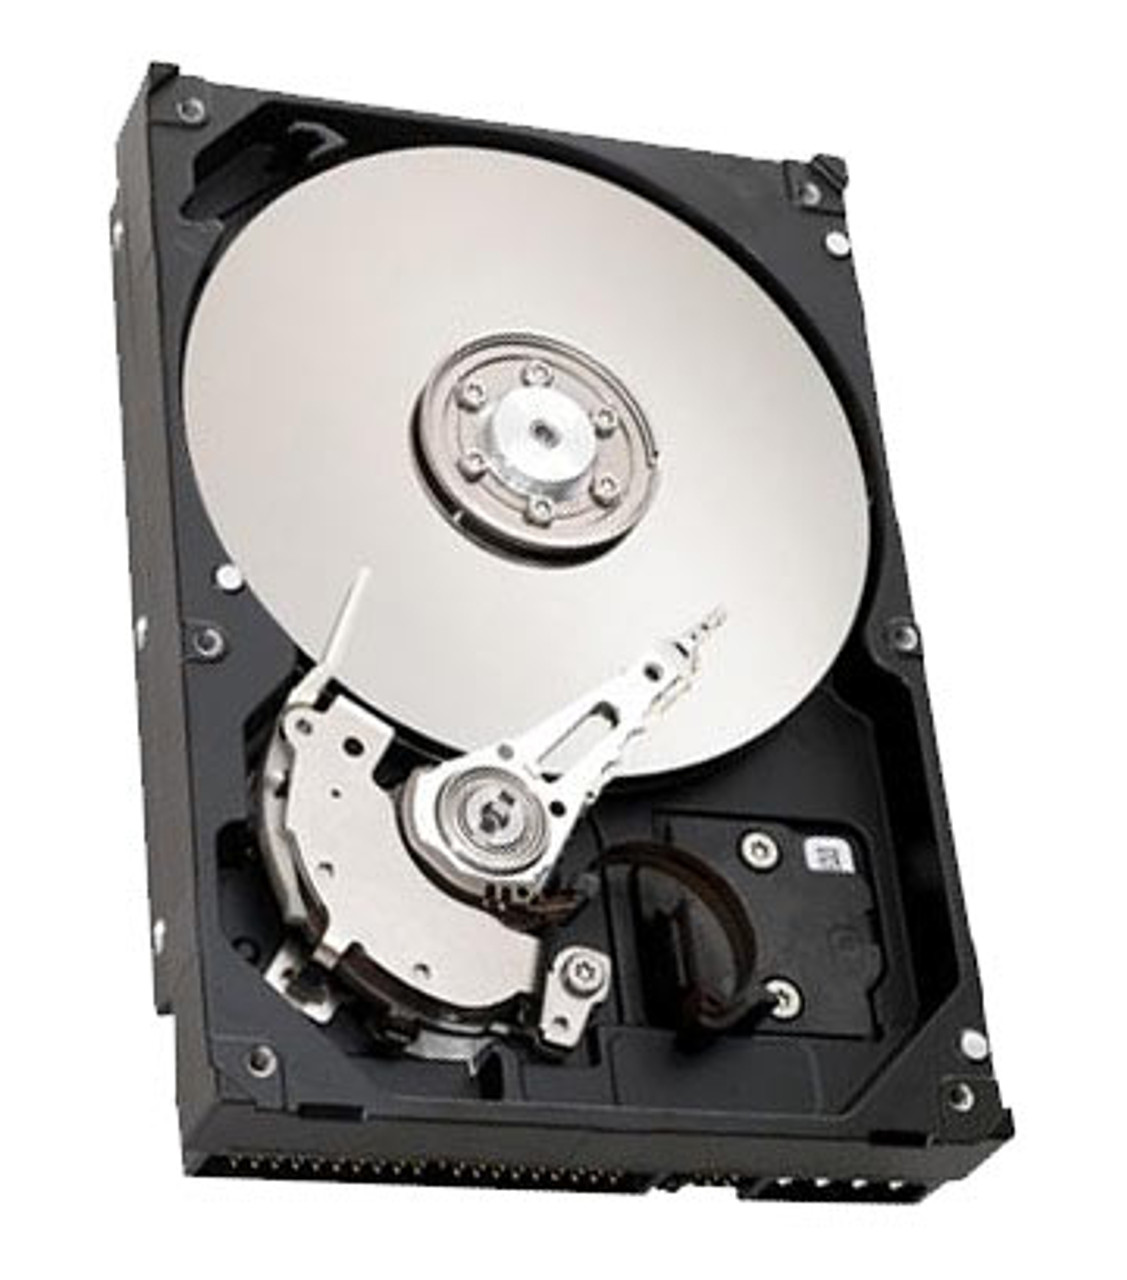 ST91420AG - Seagate Marathon 1420SL 1.4GB 4500RPM ATA/IDE 103KB Cache 2.5-inch Internal Hard Disk Drive